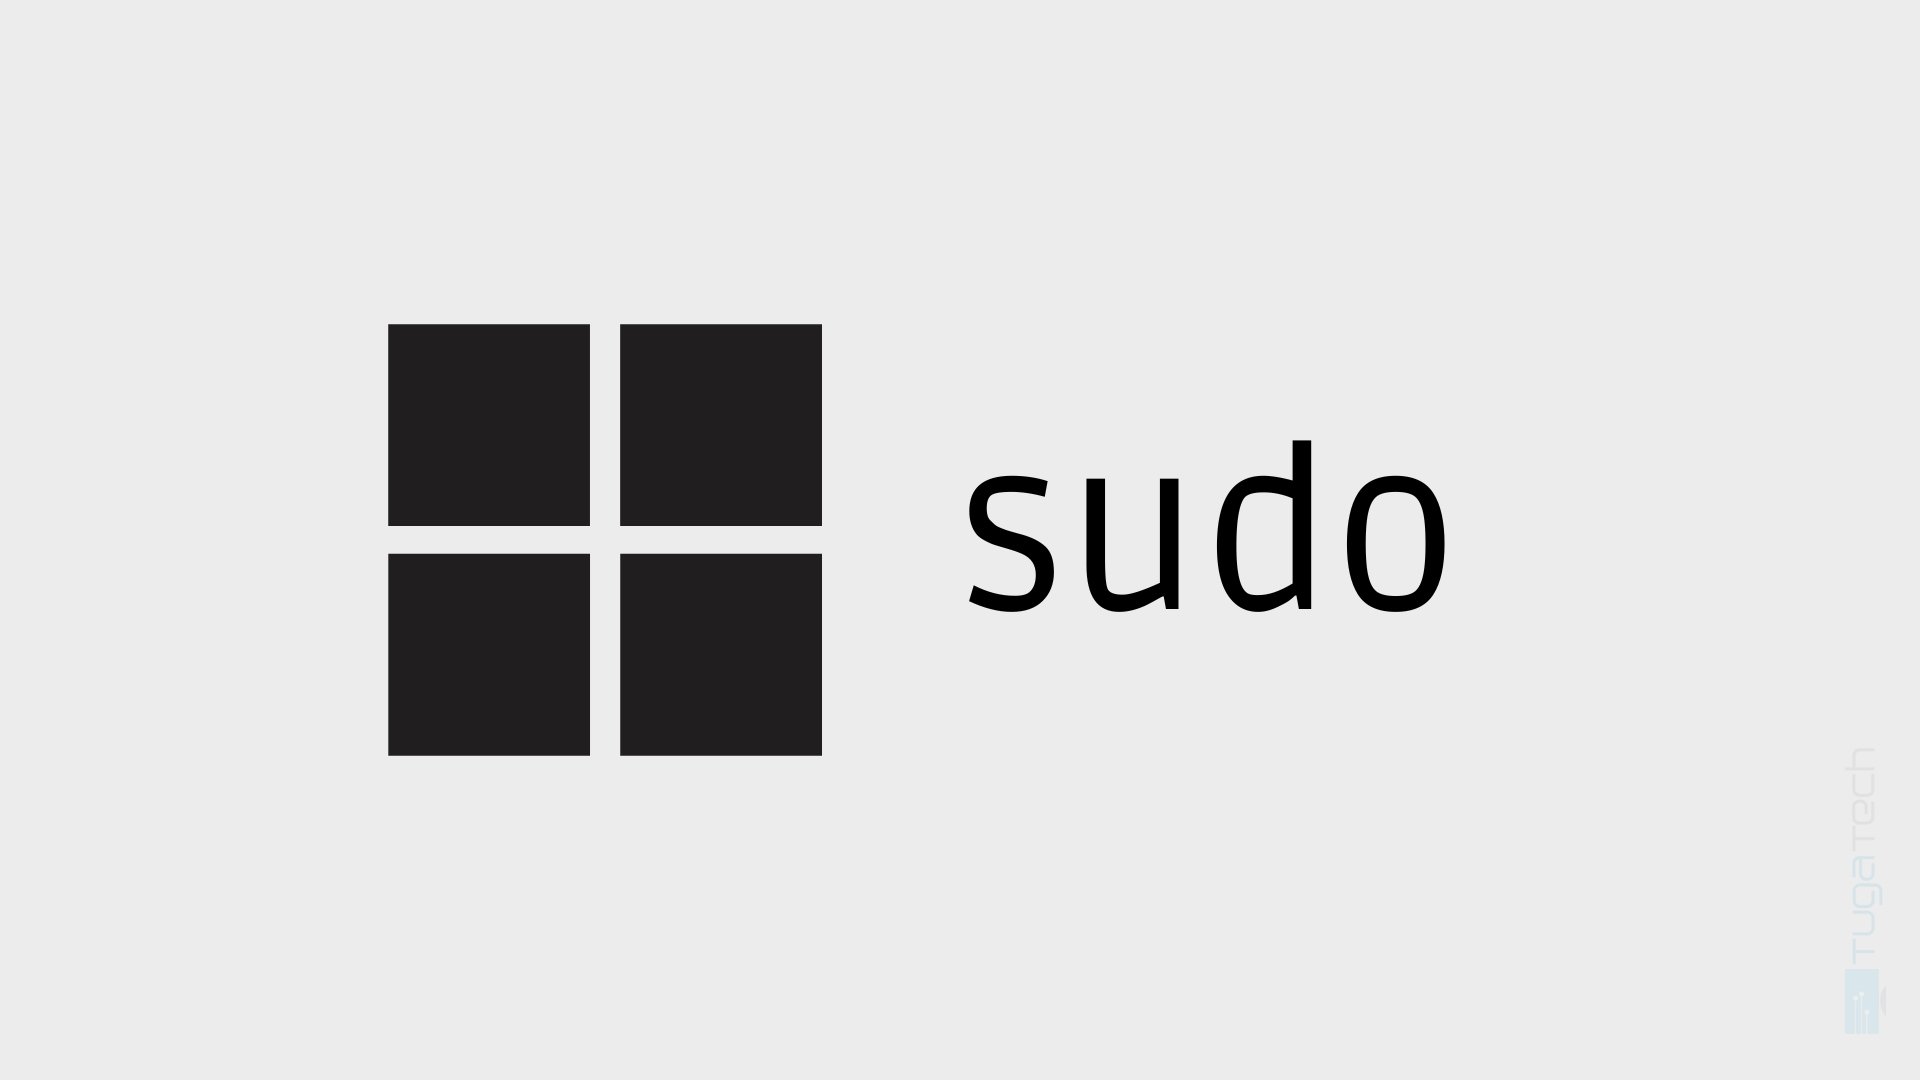 Windows Server não vai receber comando “sudo”